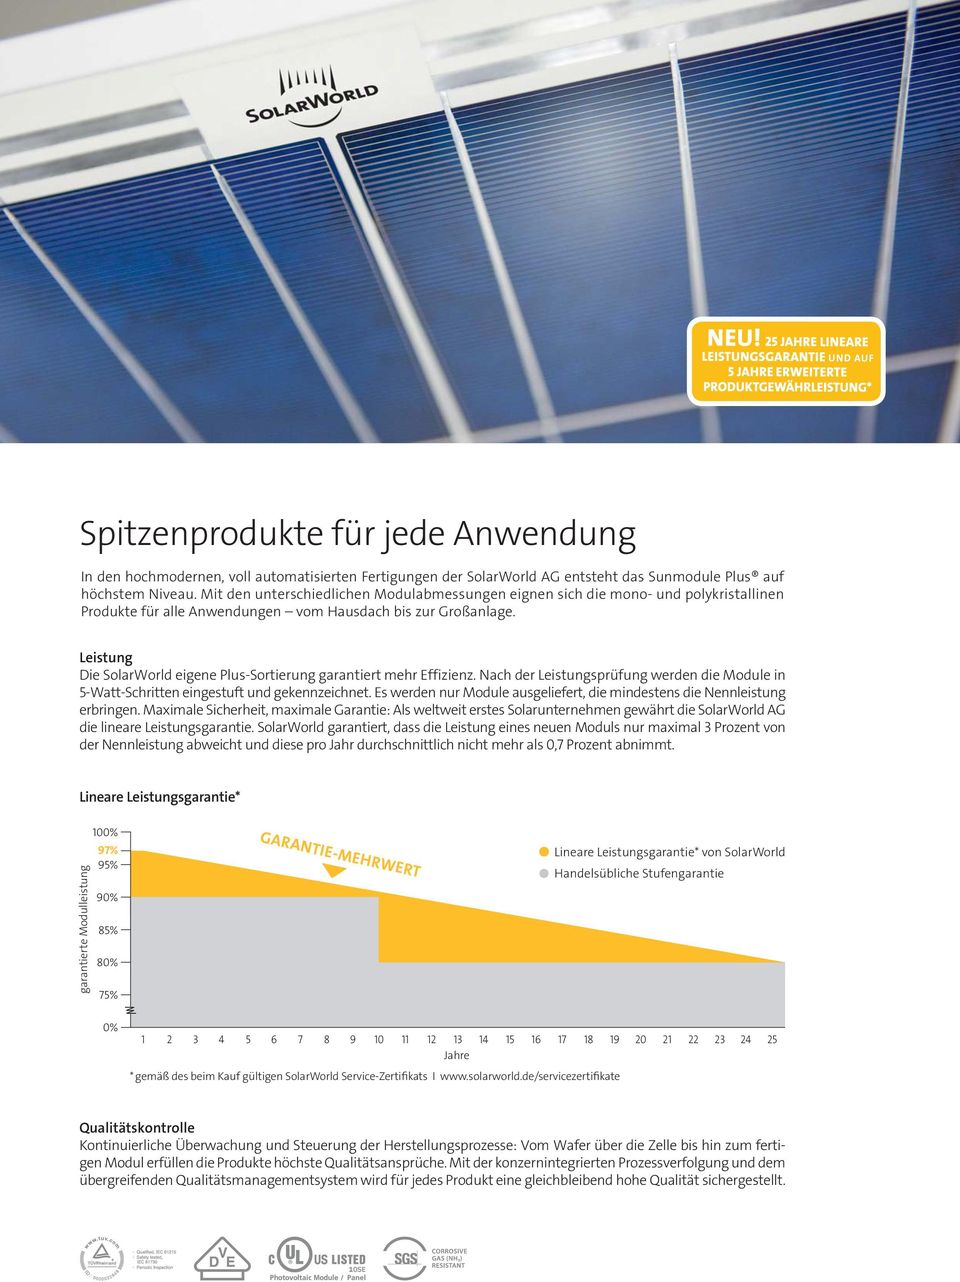 Leistung Die SolarWorld eigene Plus-Sortierung garantiert mehr Effizienz. Nach der Leistungsprüfung werden die Module in 5-Watt-Schritten eingestuft und gekennzeichnet.